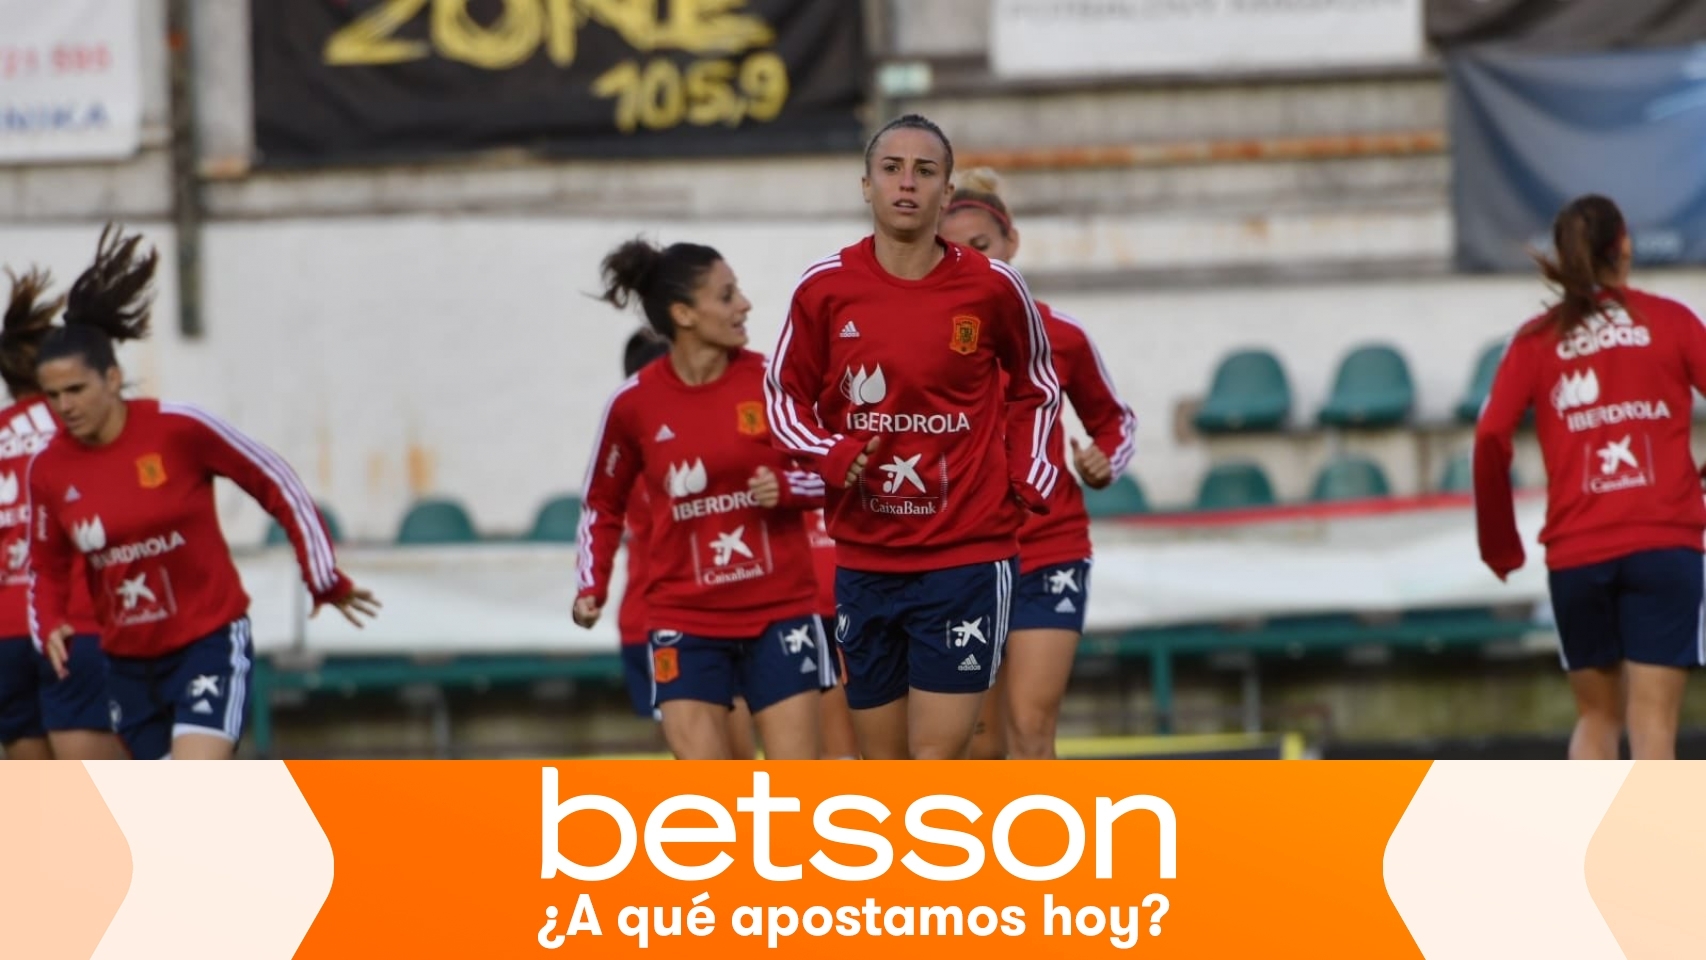 Selcción españona femenina de fútbol